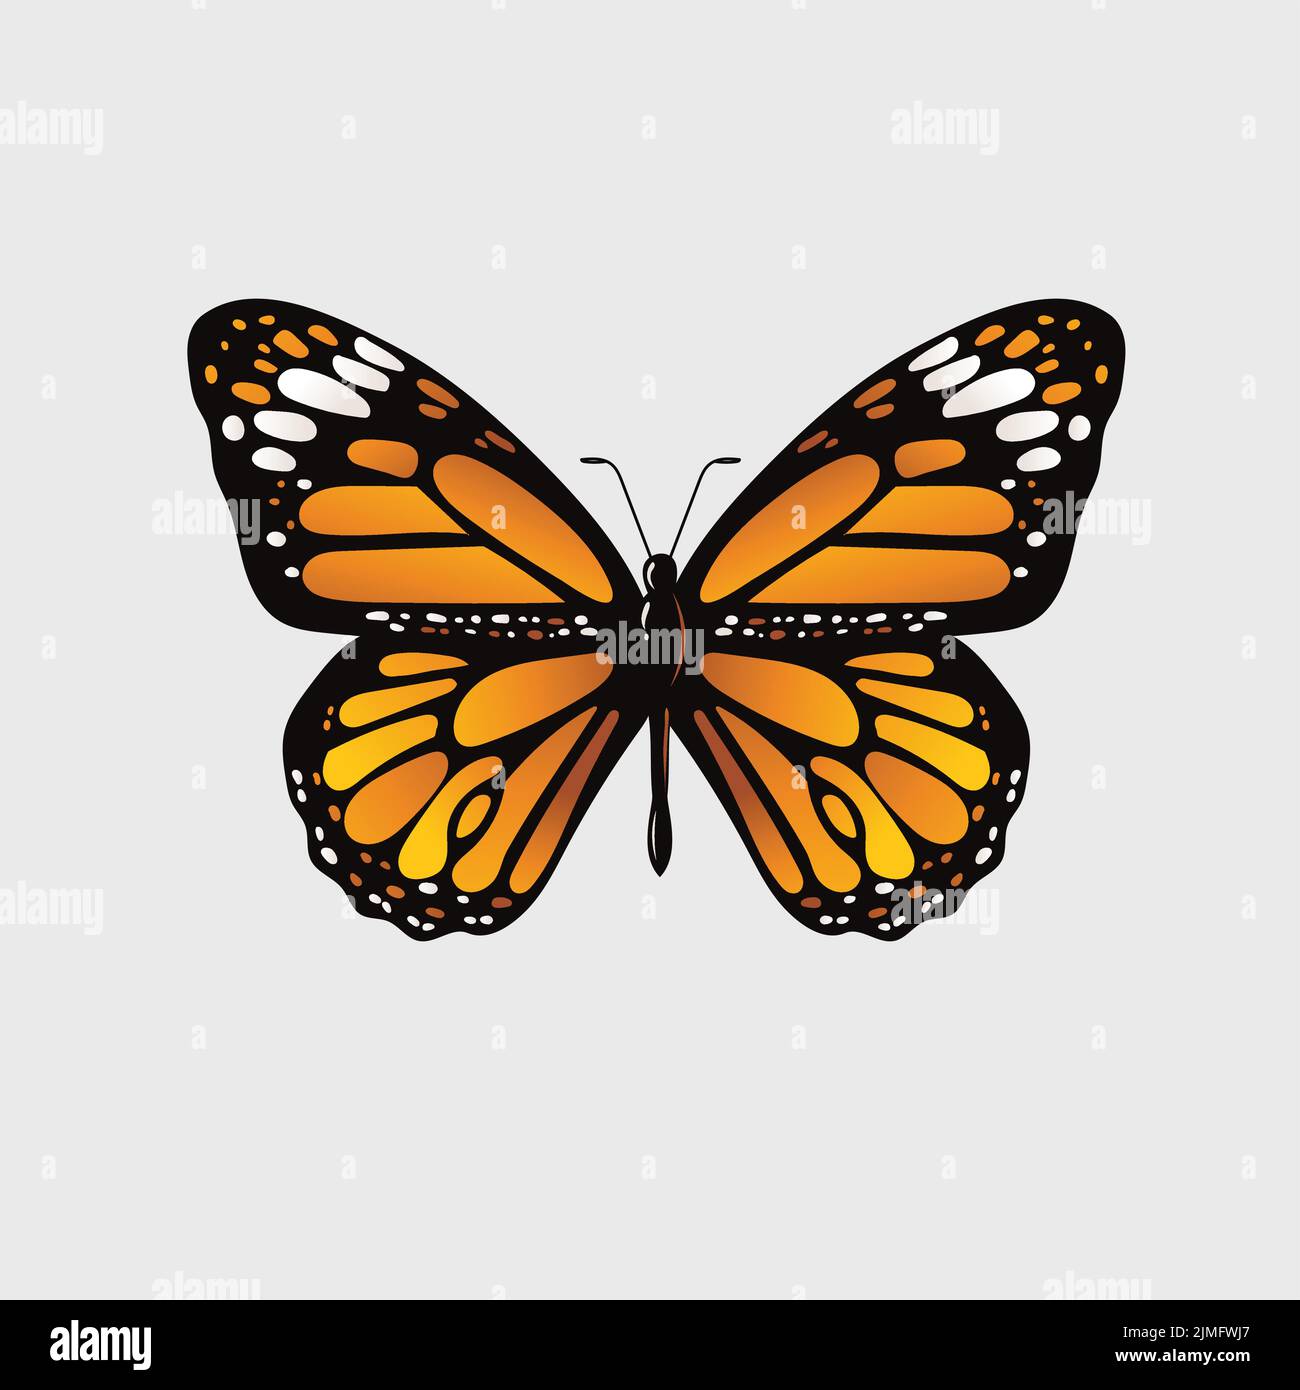 Dessin vectoriel d'un papillon orange monarque sur fond blanc Illustration de Vecteur